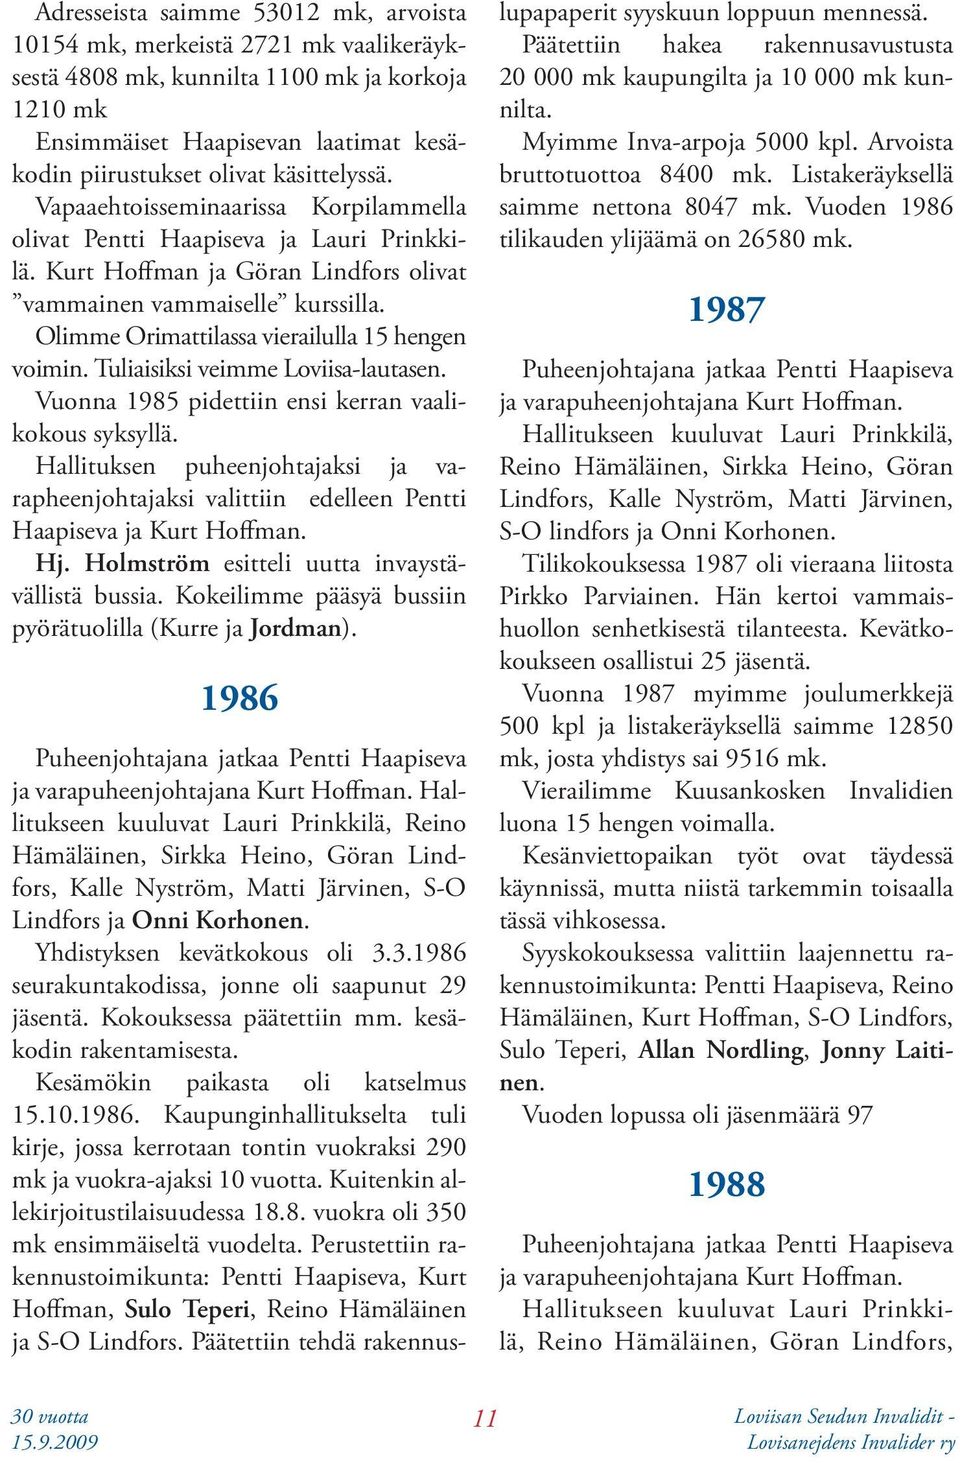 Olimme Orimattilassa vierailulla 15 hengen voimin. Tuliaisiksi veimme Loviisa-lautasen. Vuonna 1985 pidettiin ensi kerran vaalikokous syksyllä.